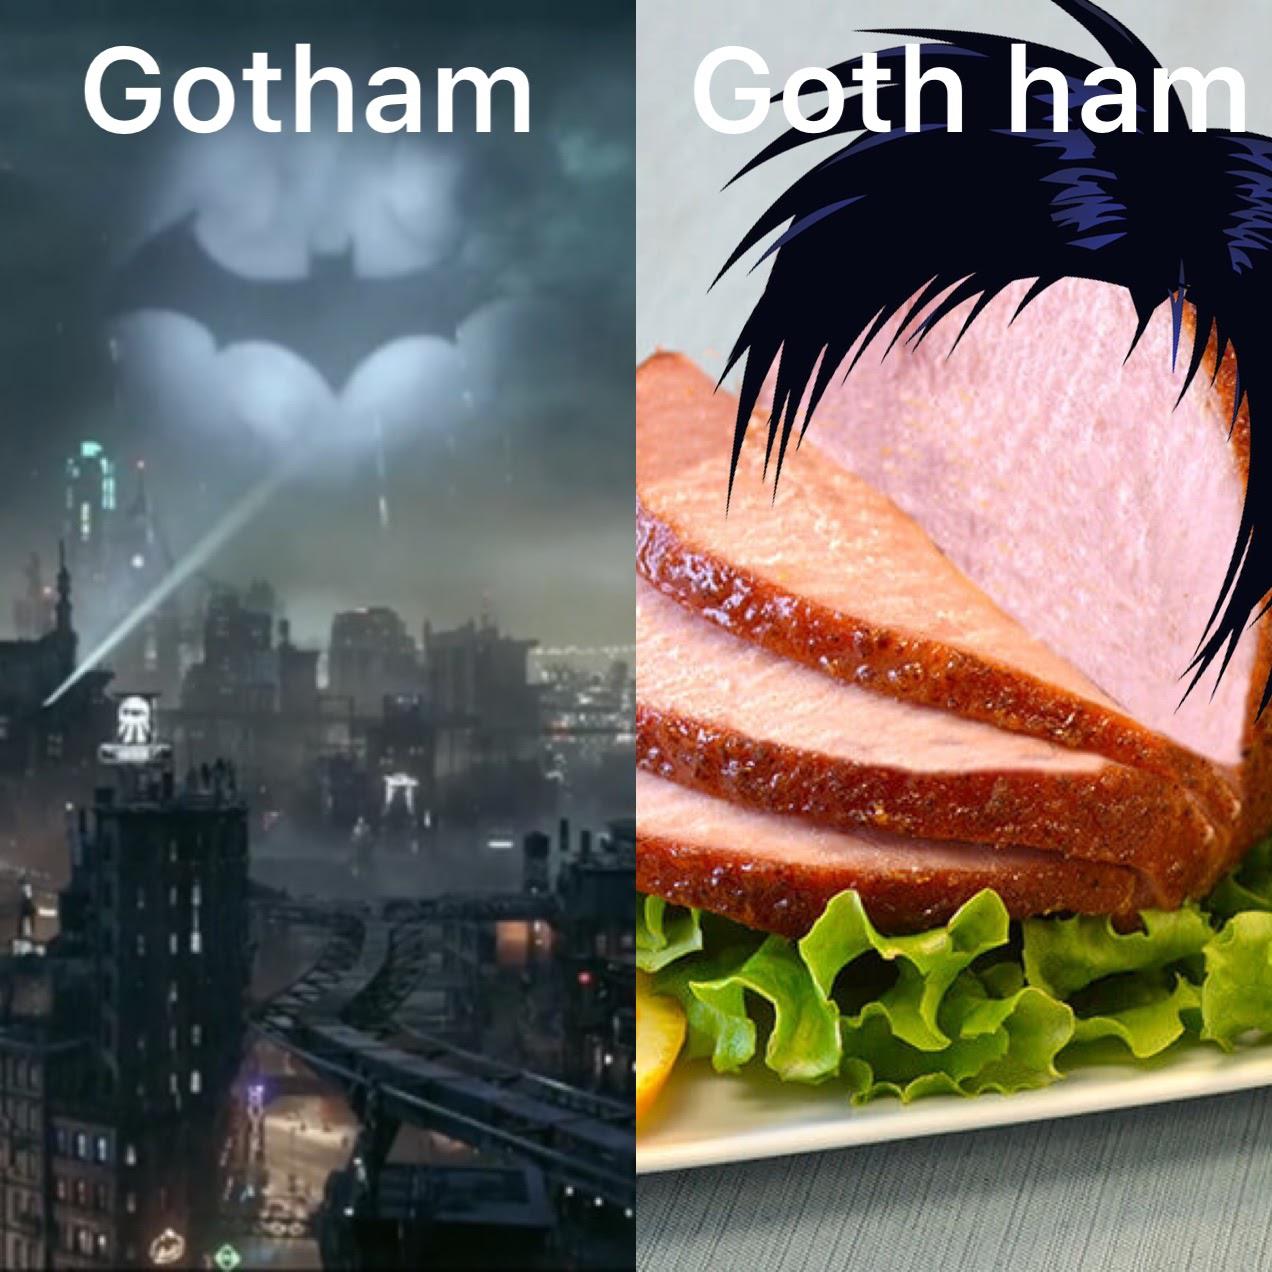 dank memes - lego game ui - Gotham Goth ham